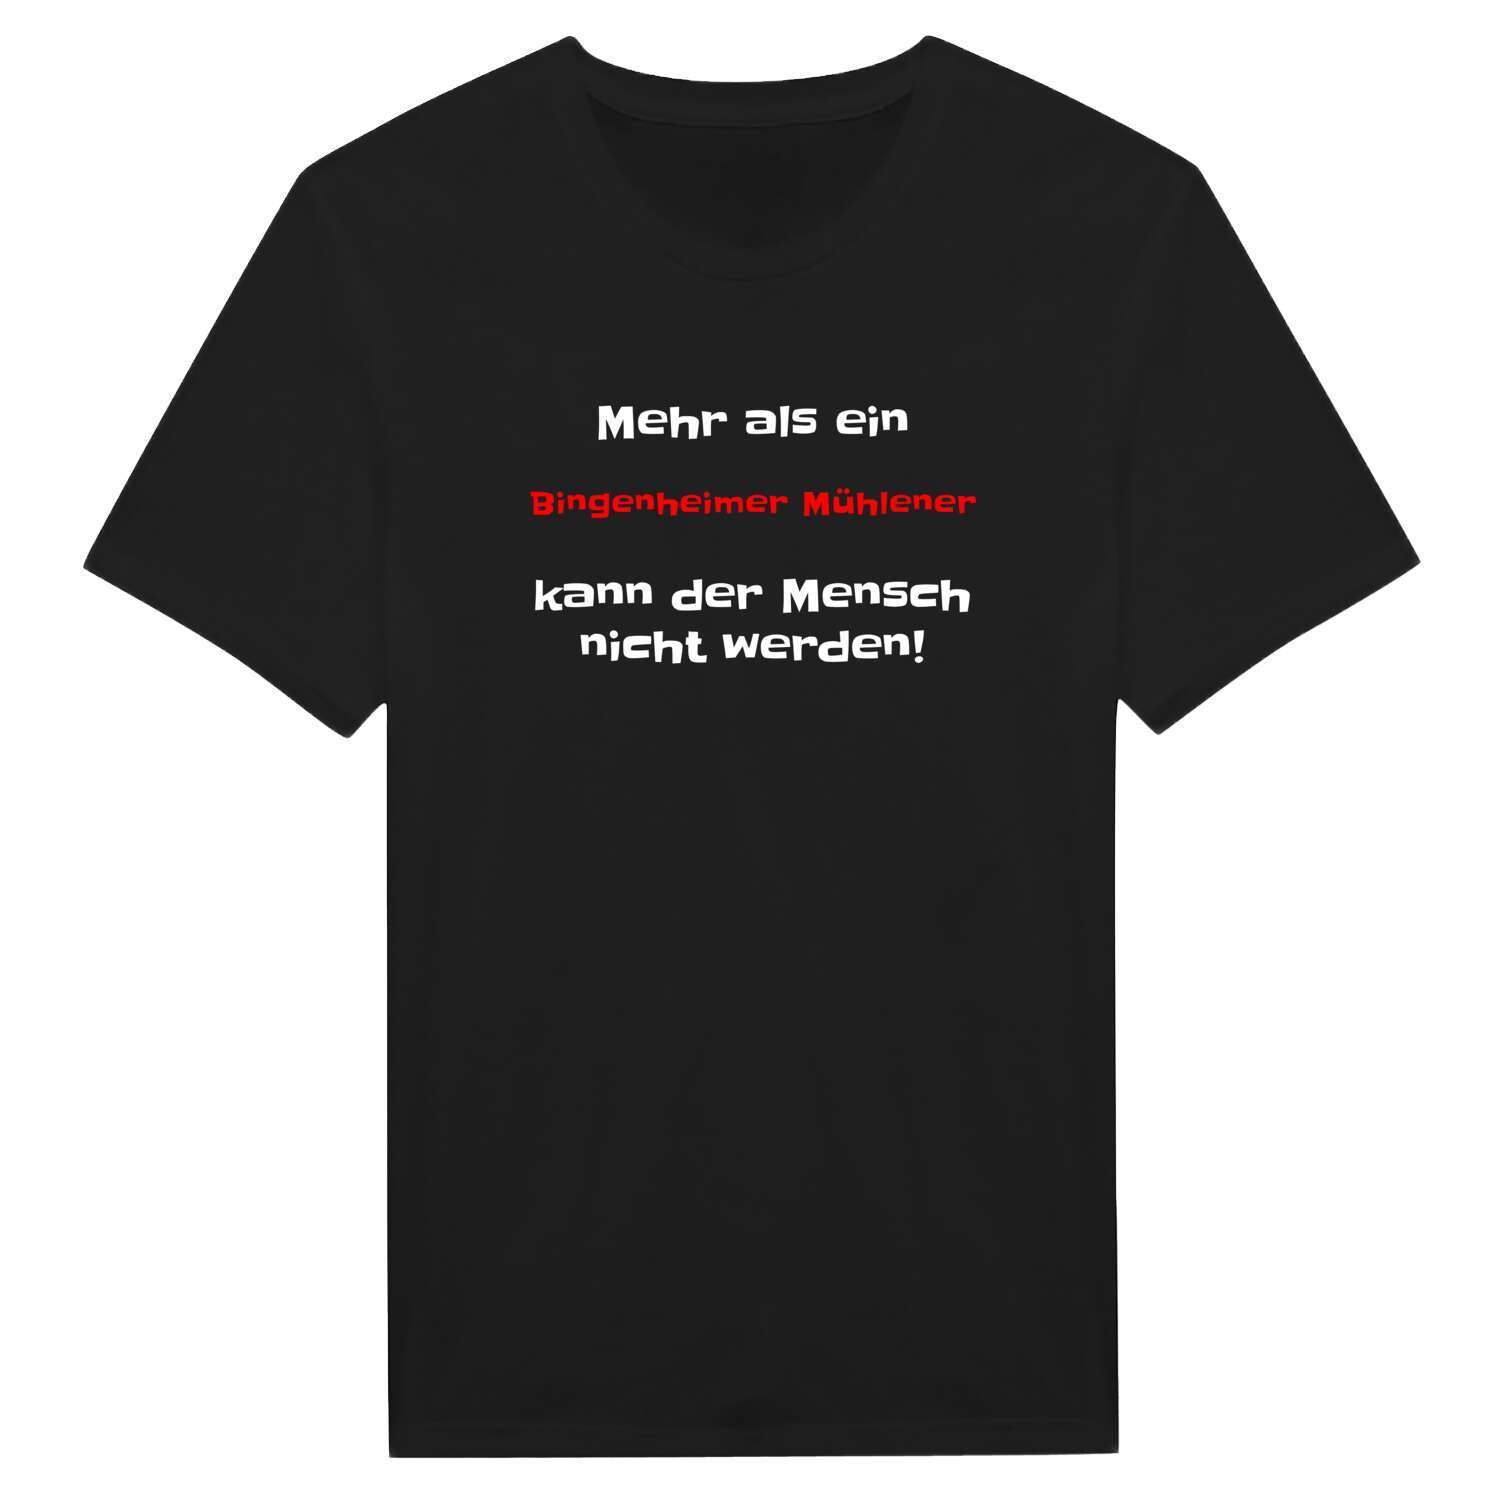 Bingenheimer Mühle T-Shirt »Mehr als ein«